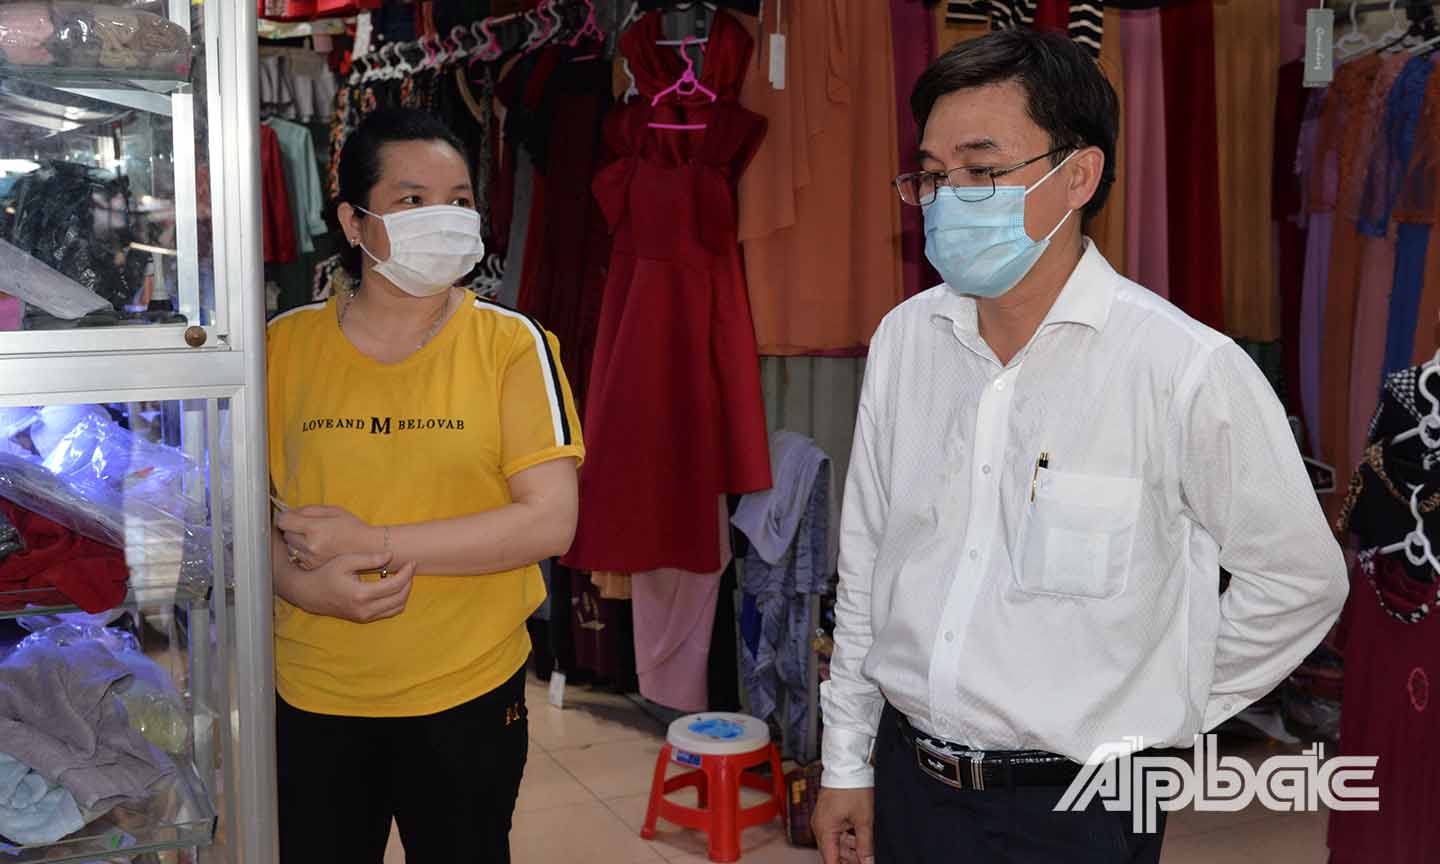 Đồng chí Nguyễn Văn Mười nhắc nhở một tiểu thương ở chợ Cái Bè thực hiện nghiêm việc đeo khẩu trang.